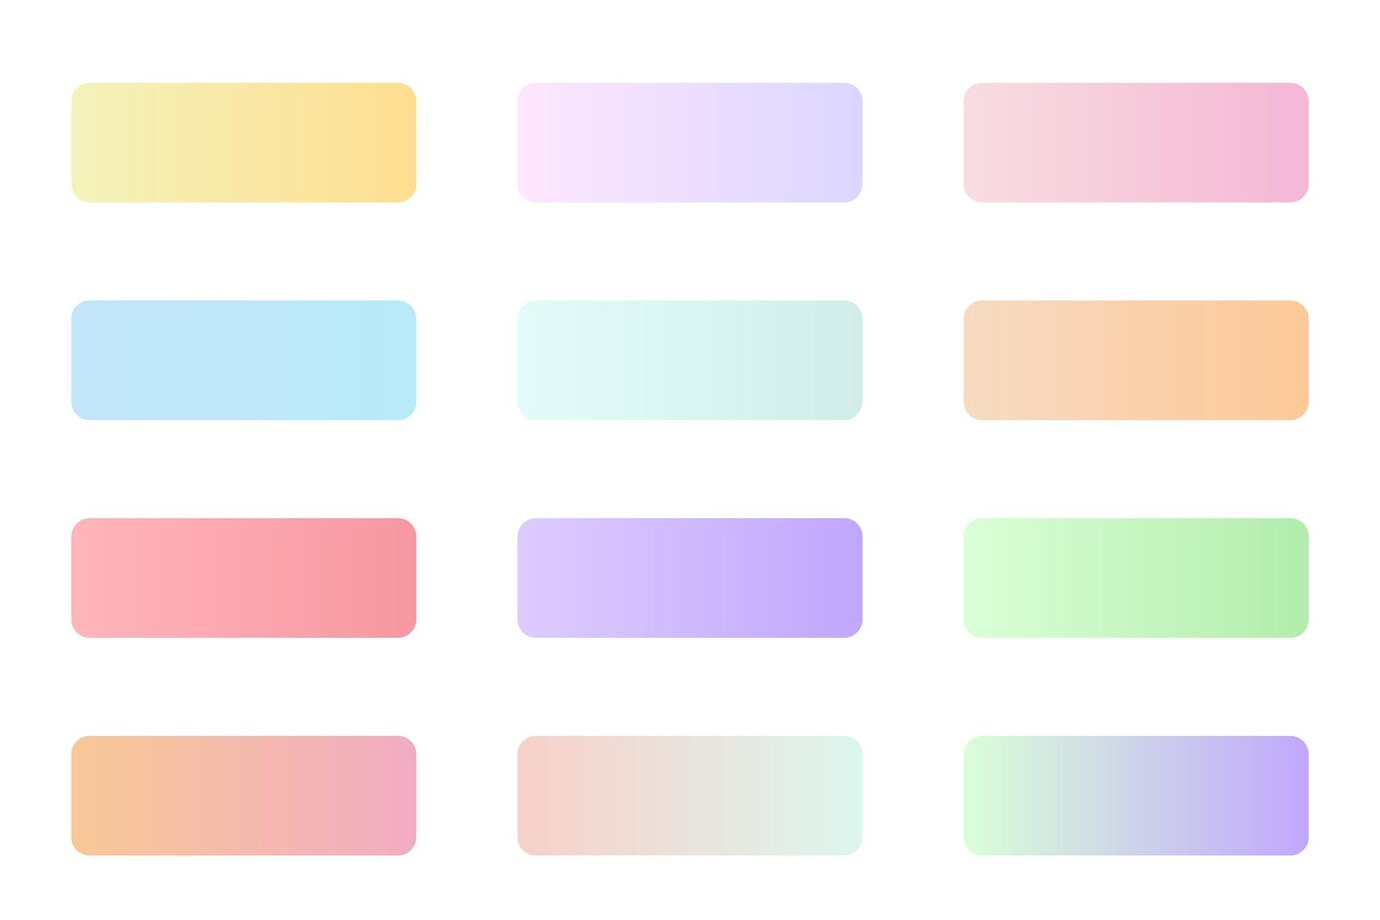 Single color palette